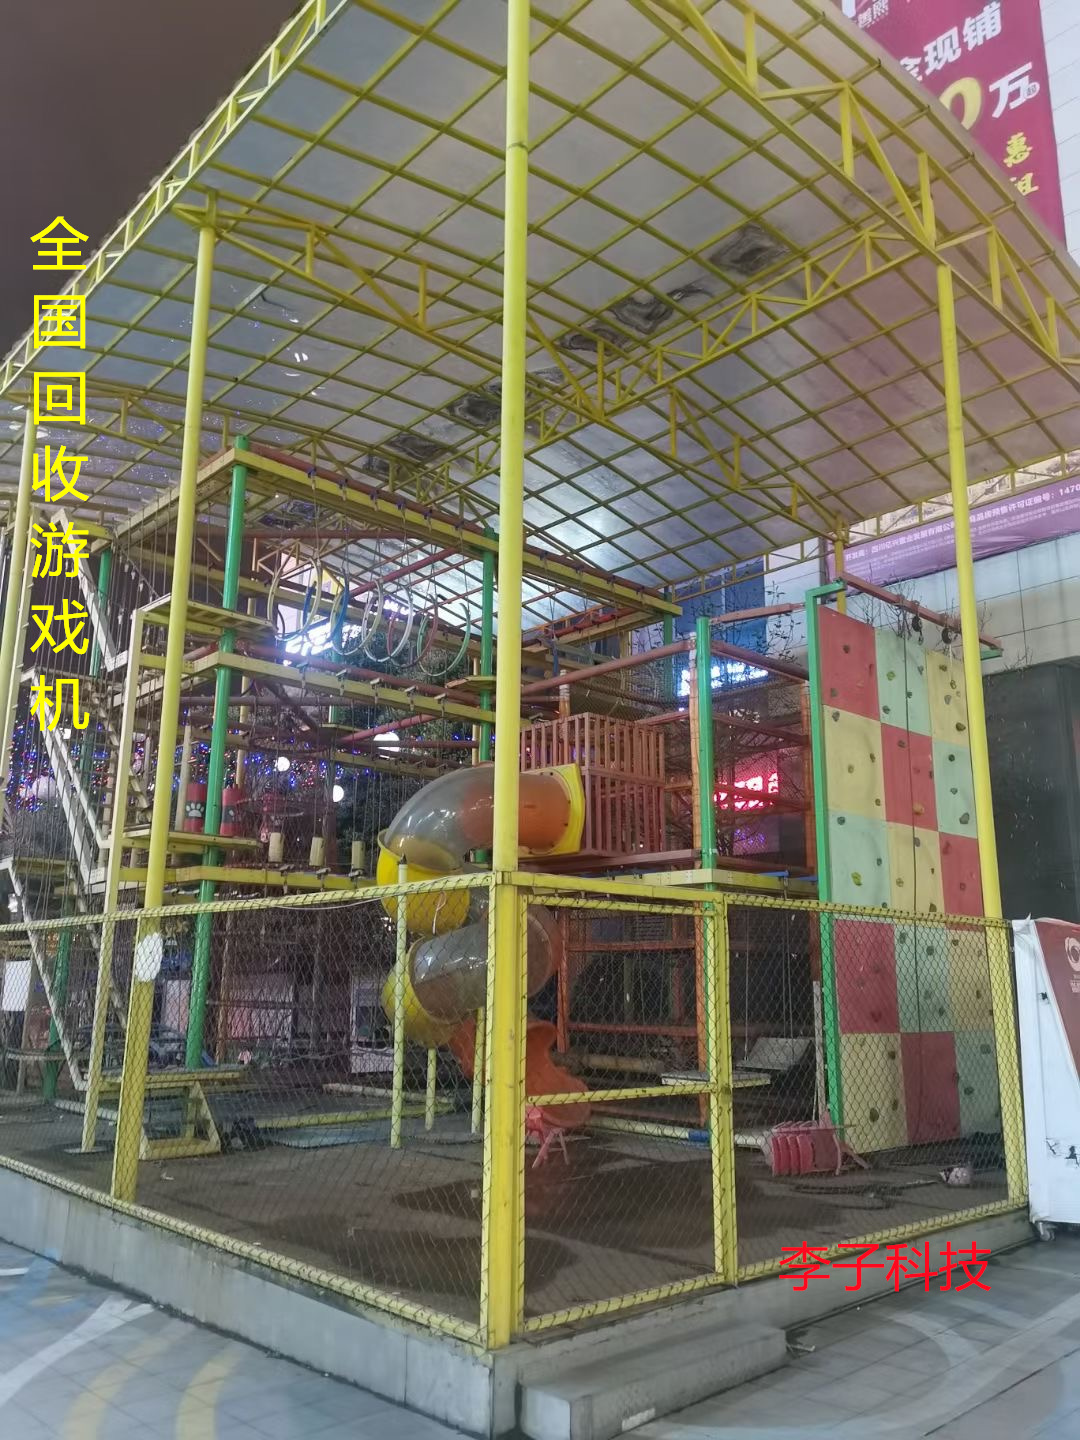 深圳游戏厅机器回收电话 游乐园游戏厅回收